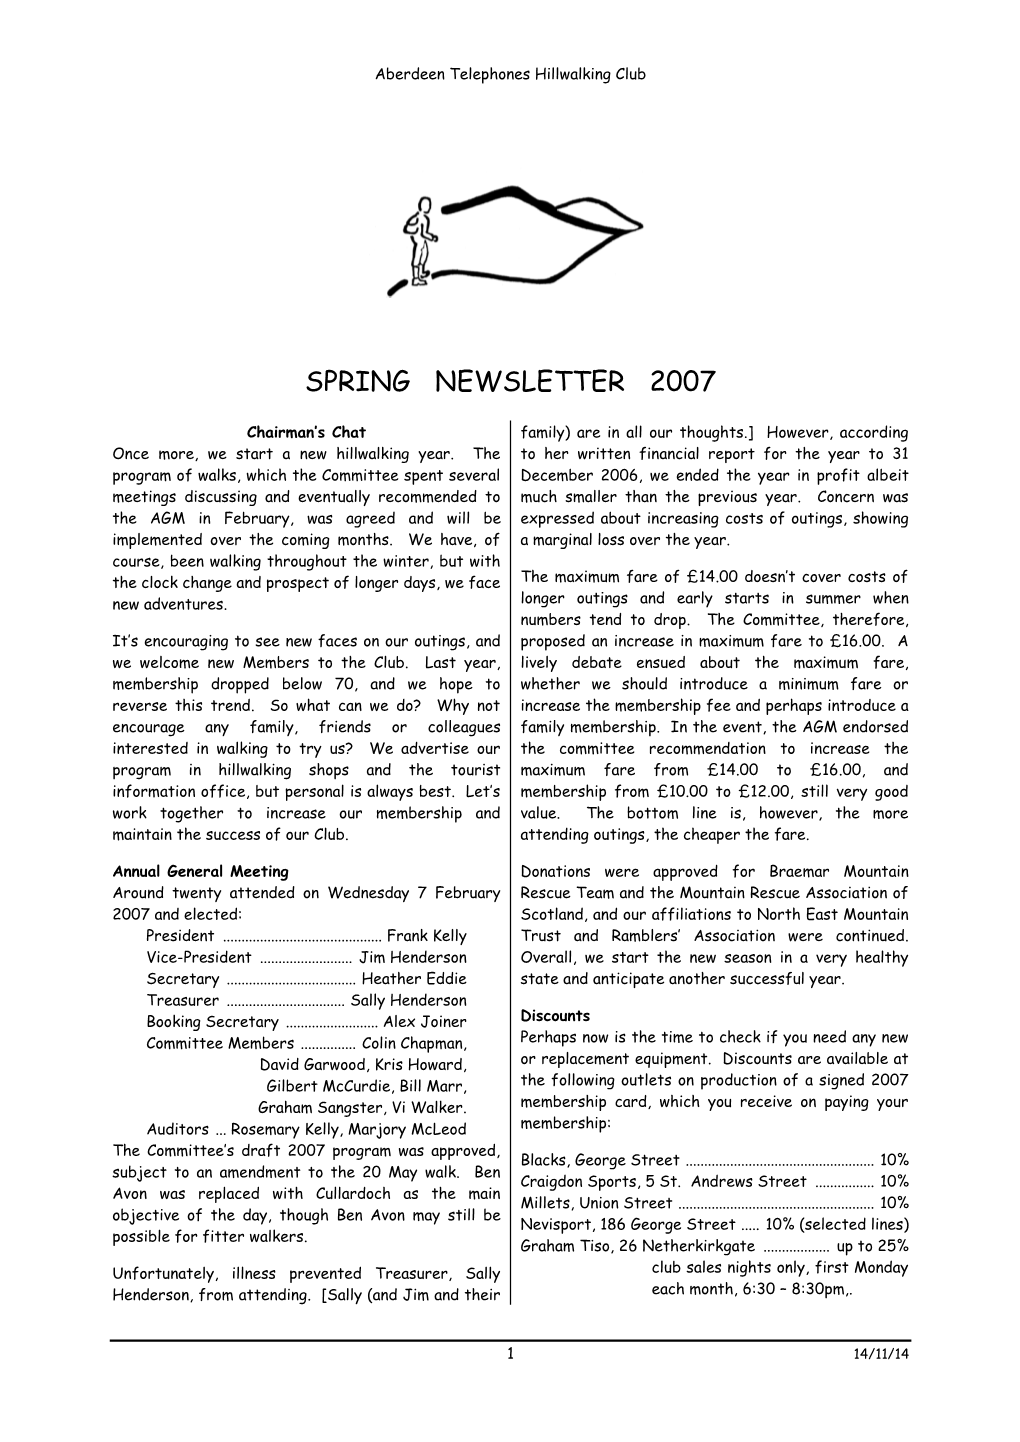 Spring Newsletter 2007